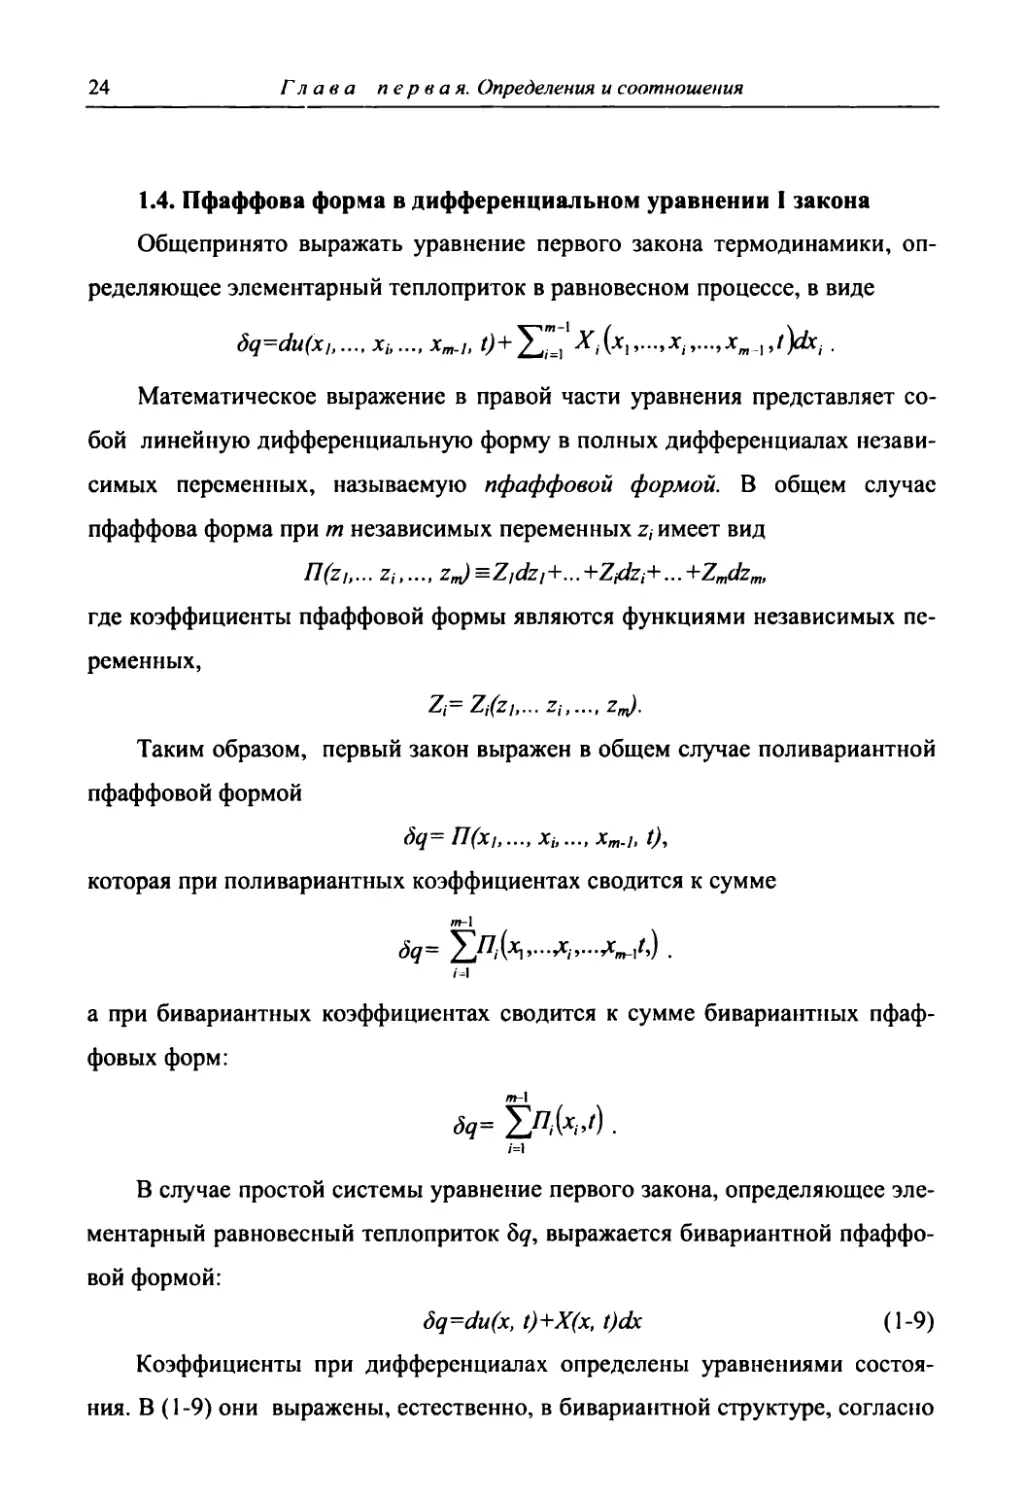 Пфаффова форма в дифференциальном уравнении I закона